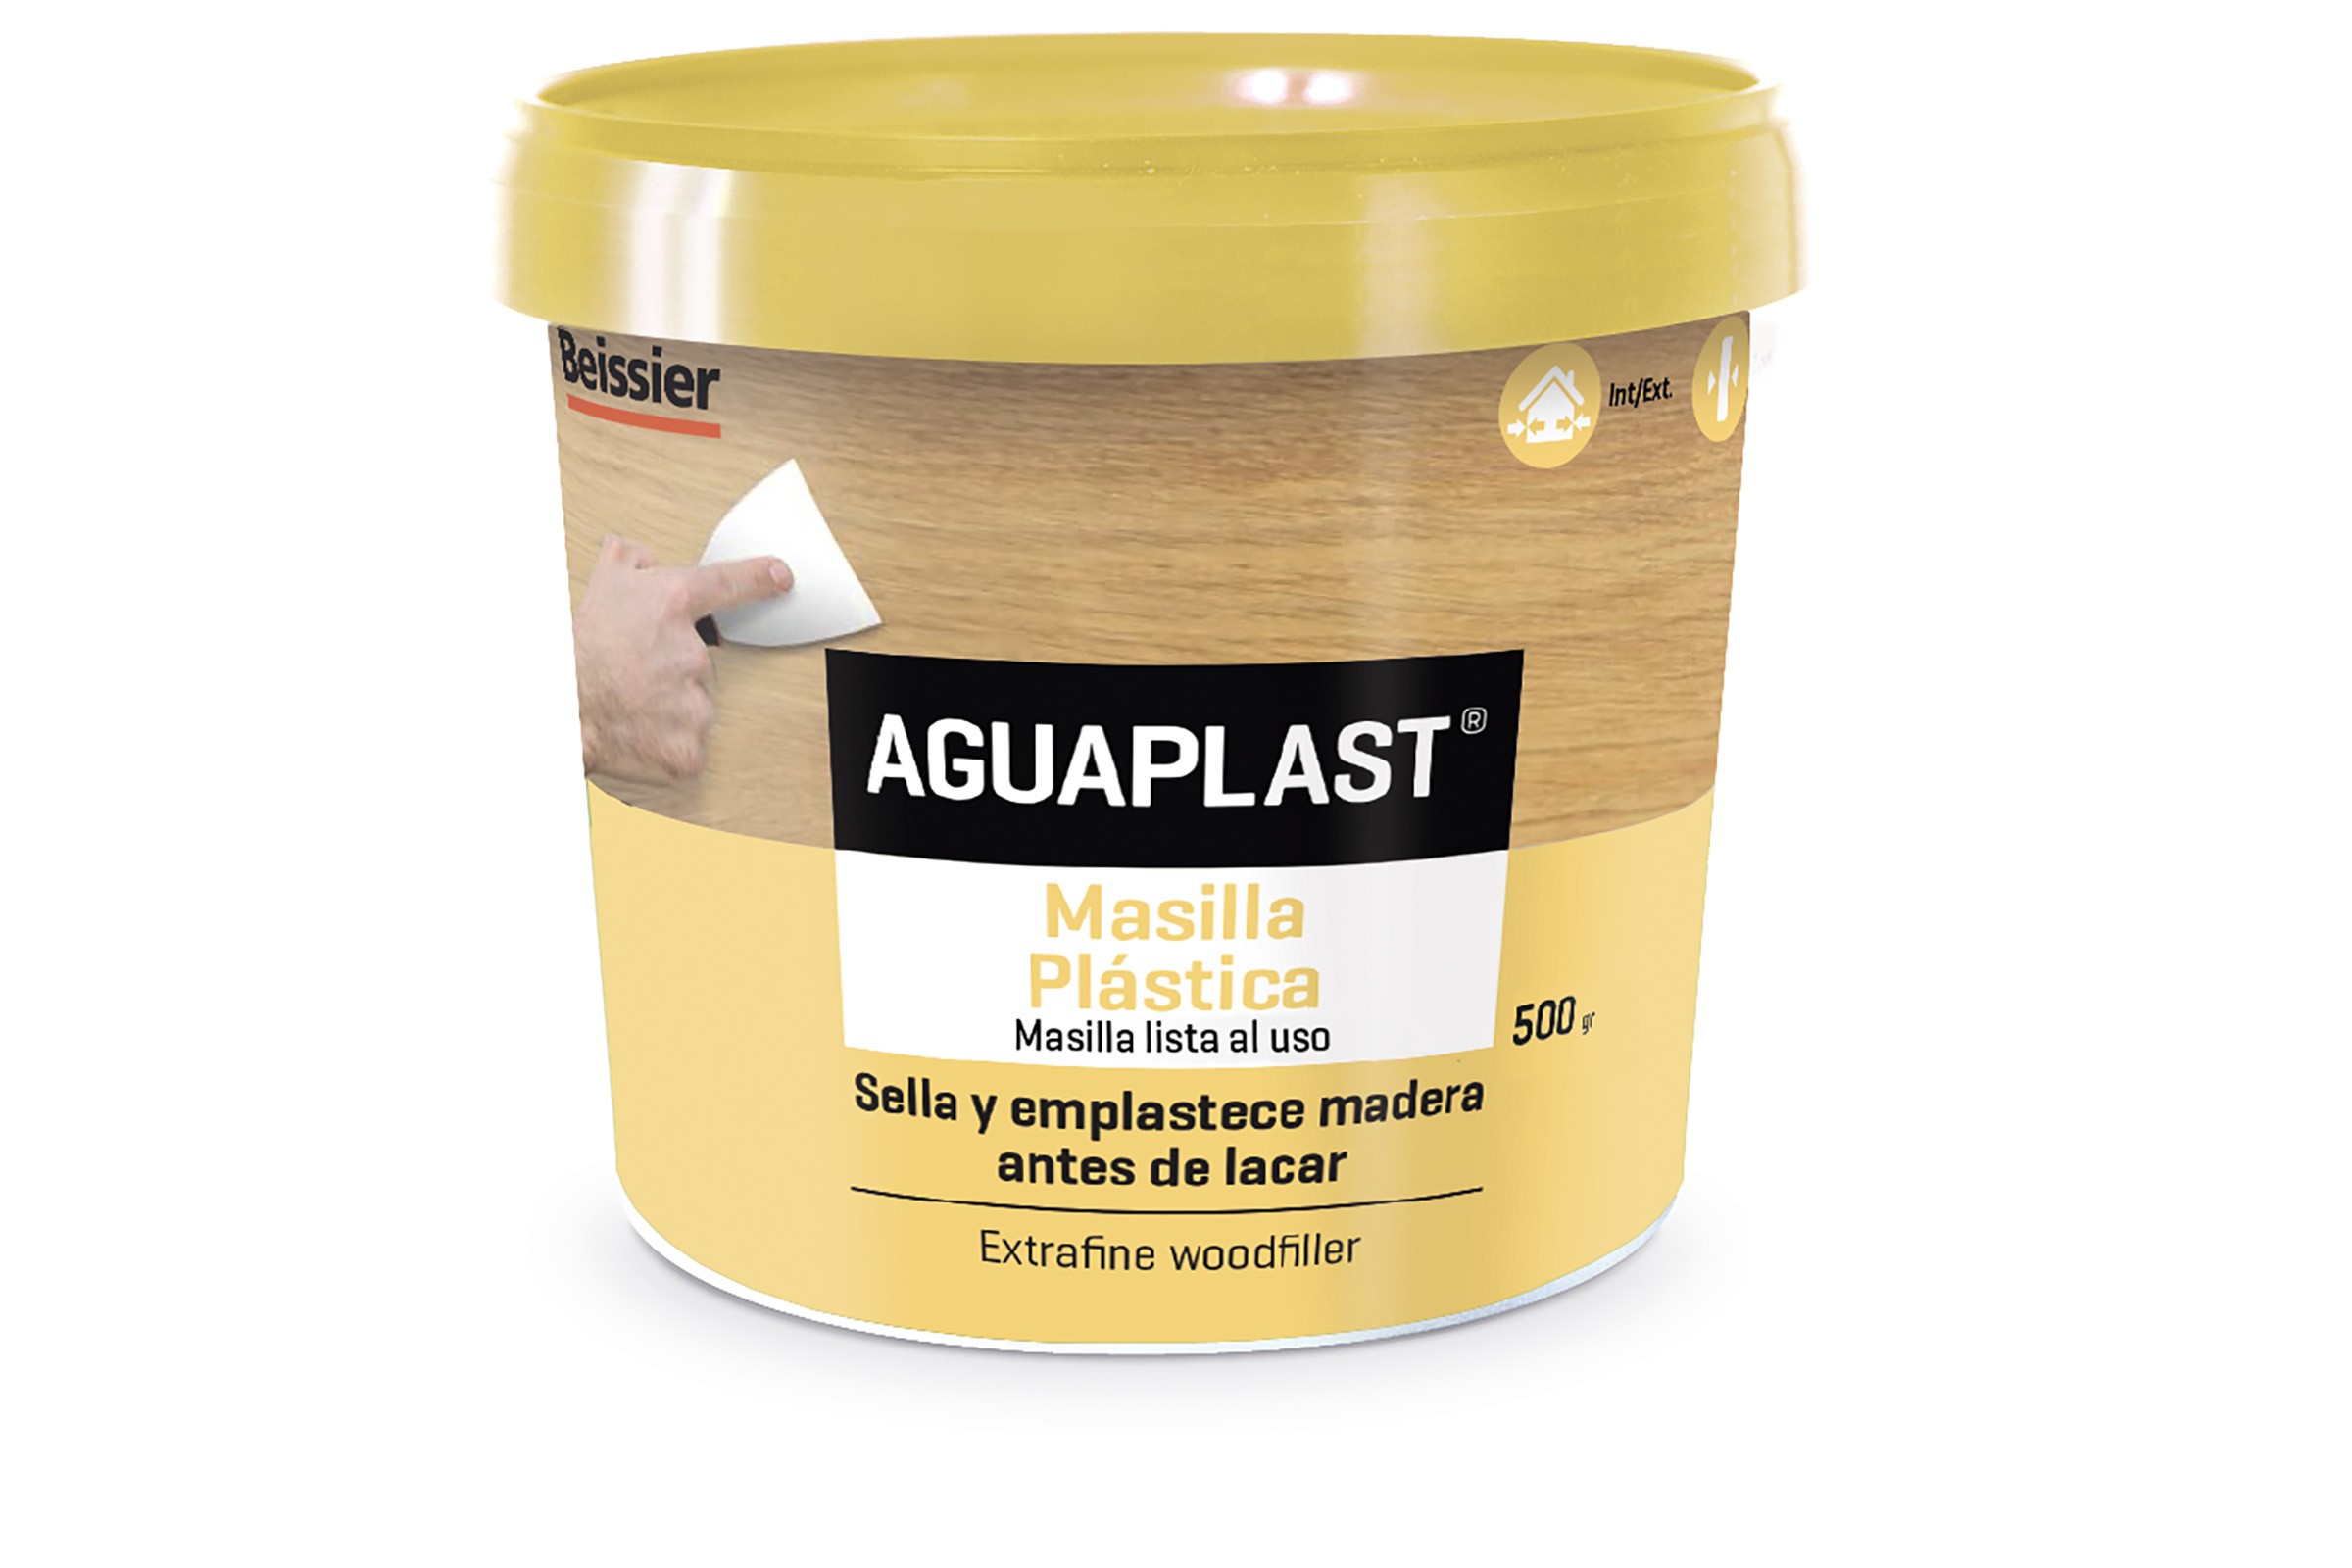 AguaPlast Madera (1 Kg en polvo)